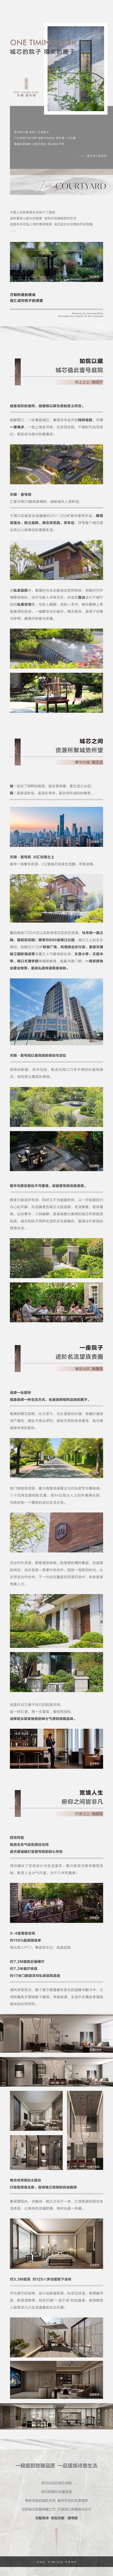 南门网 专题设计 长图 房地产 别墅 院子 庭院 景观 品质 价值点 卖点 简约